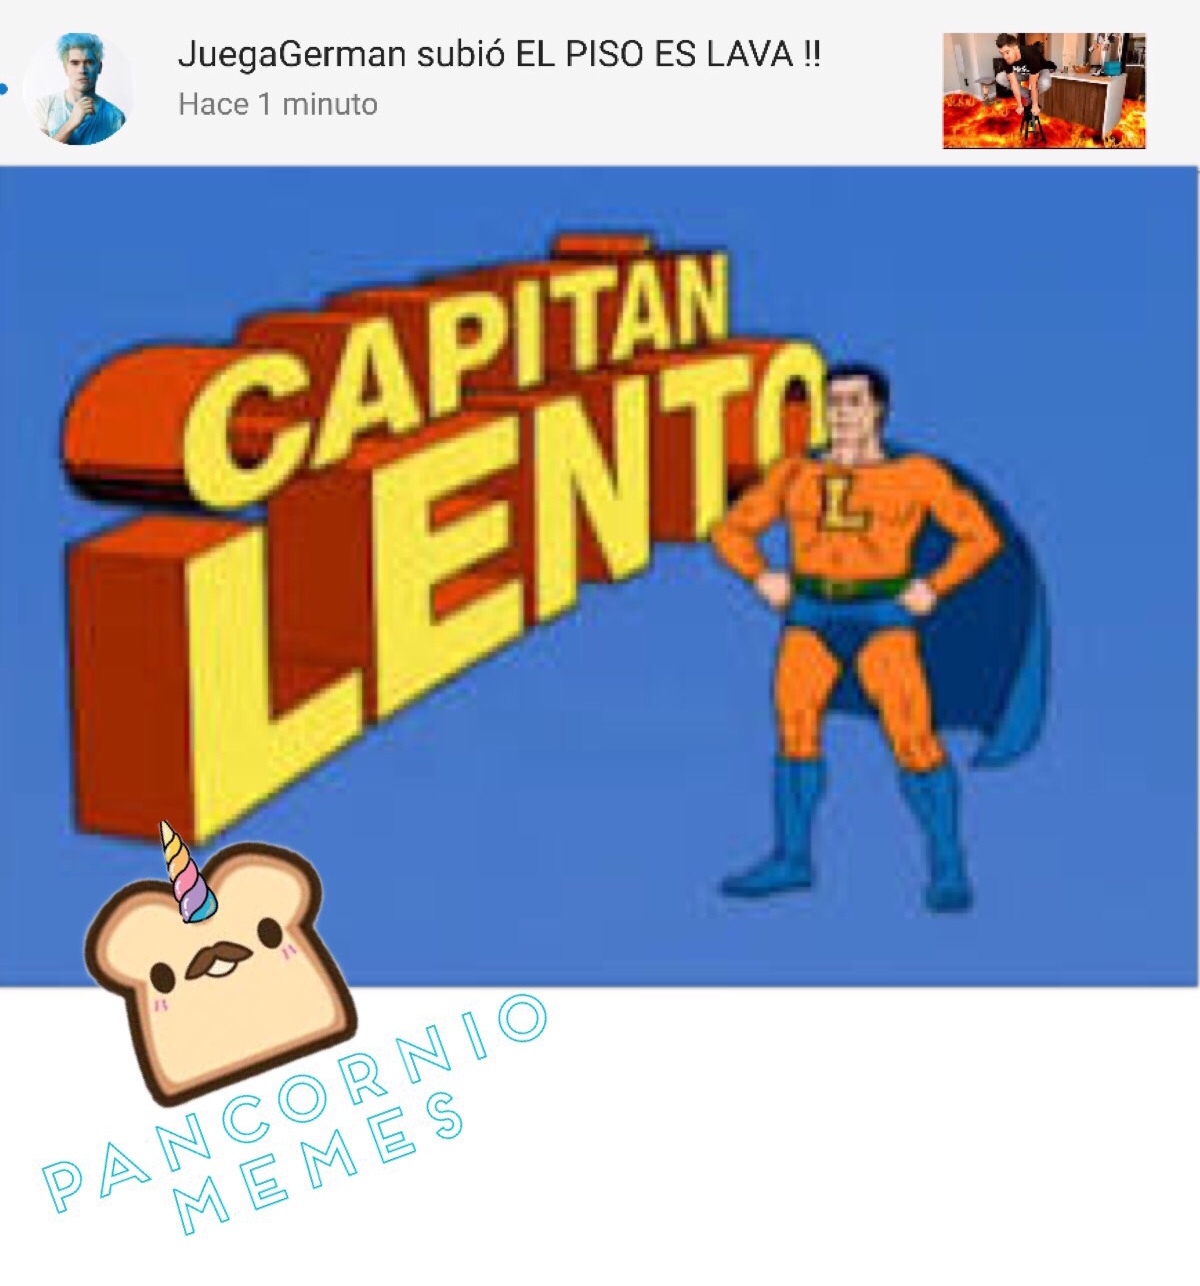 Capitán Lento! - meme